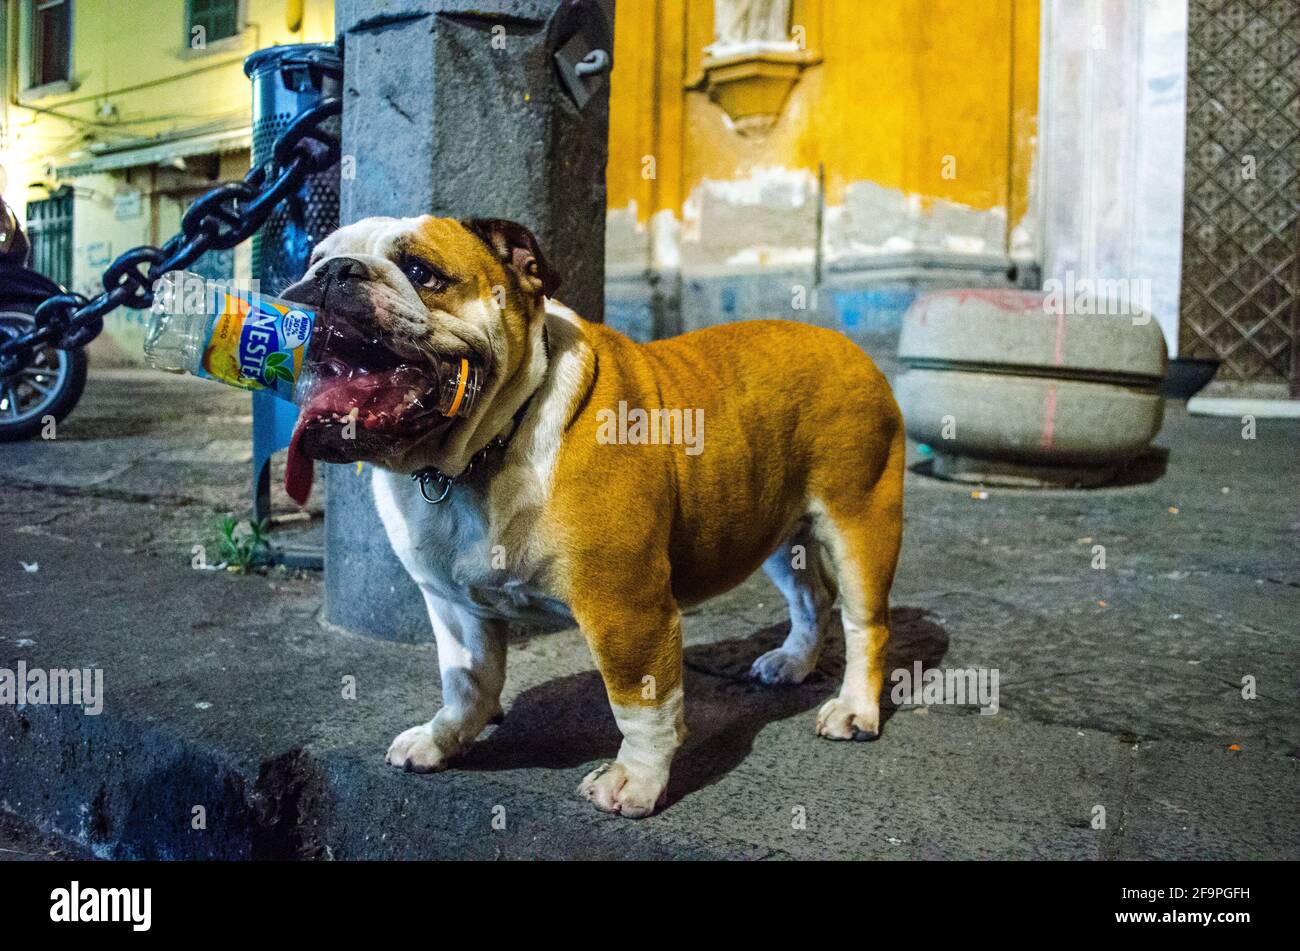 le chiot bulldog mignon est une bouteille en plastique piquant dans la ville italienne de naples. Banque D'Images